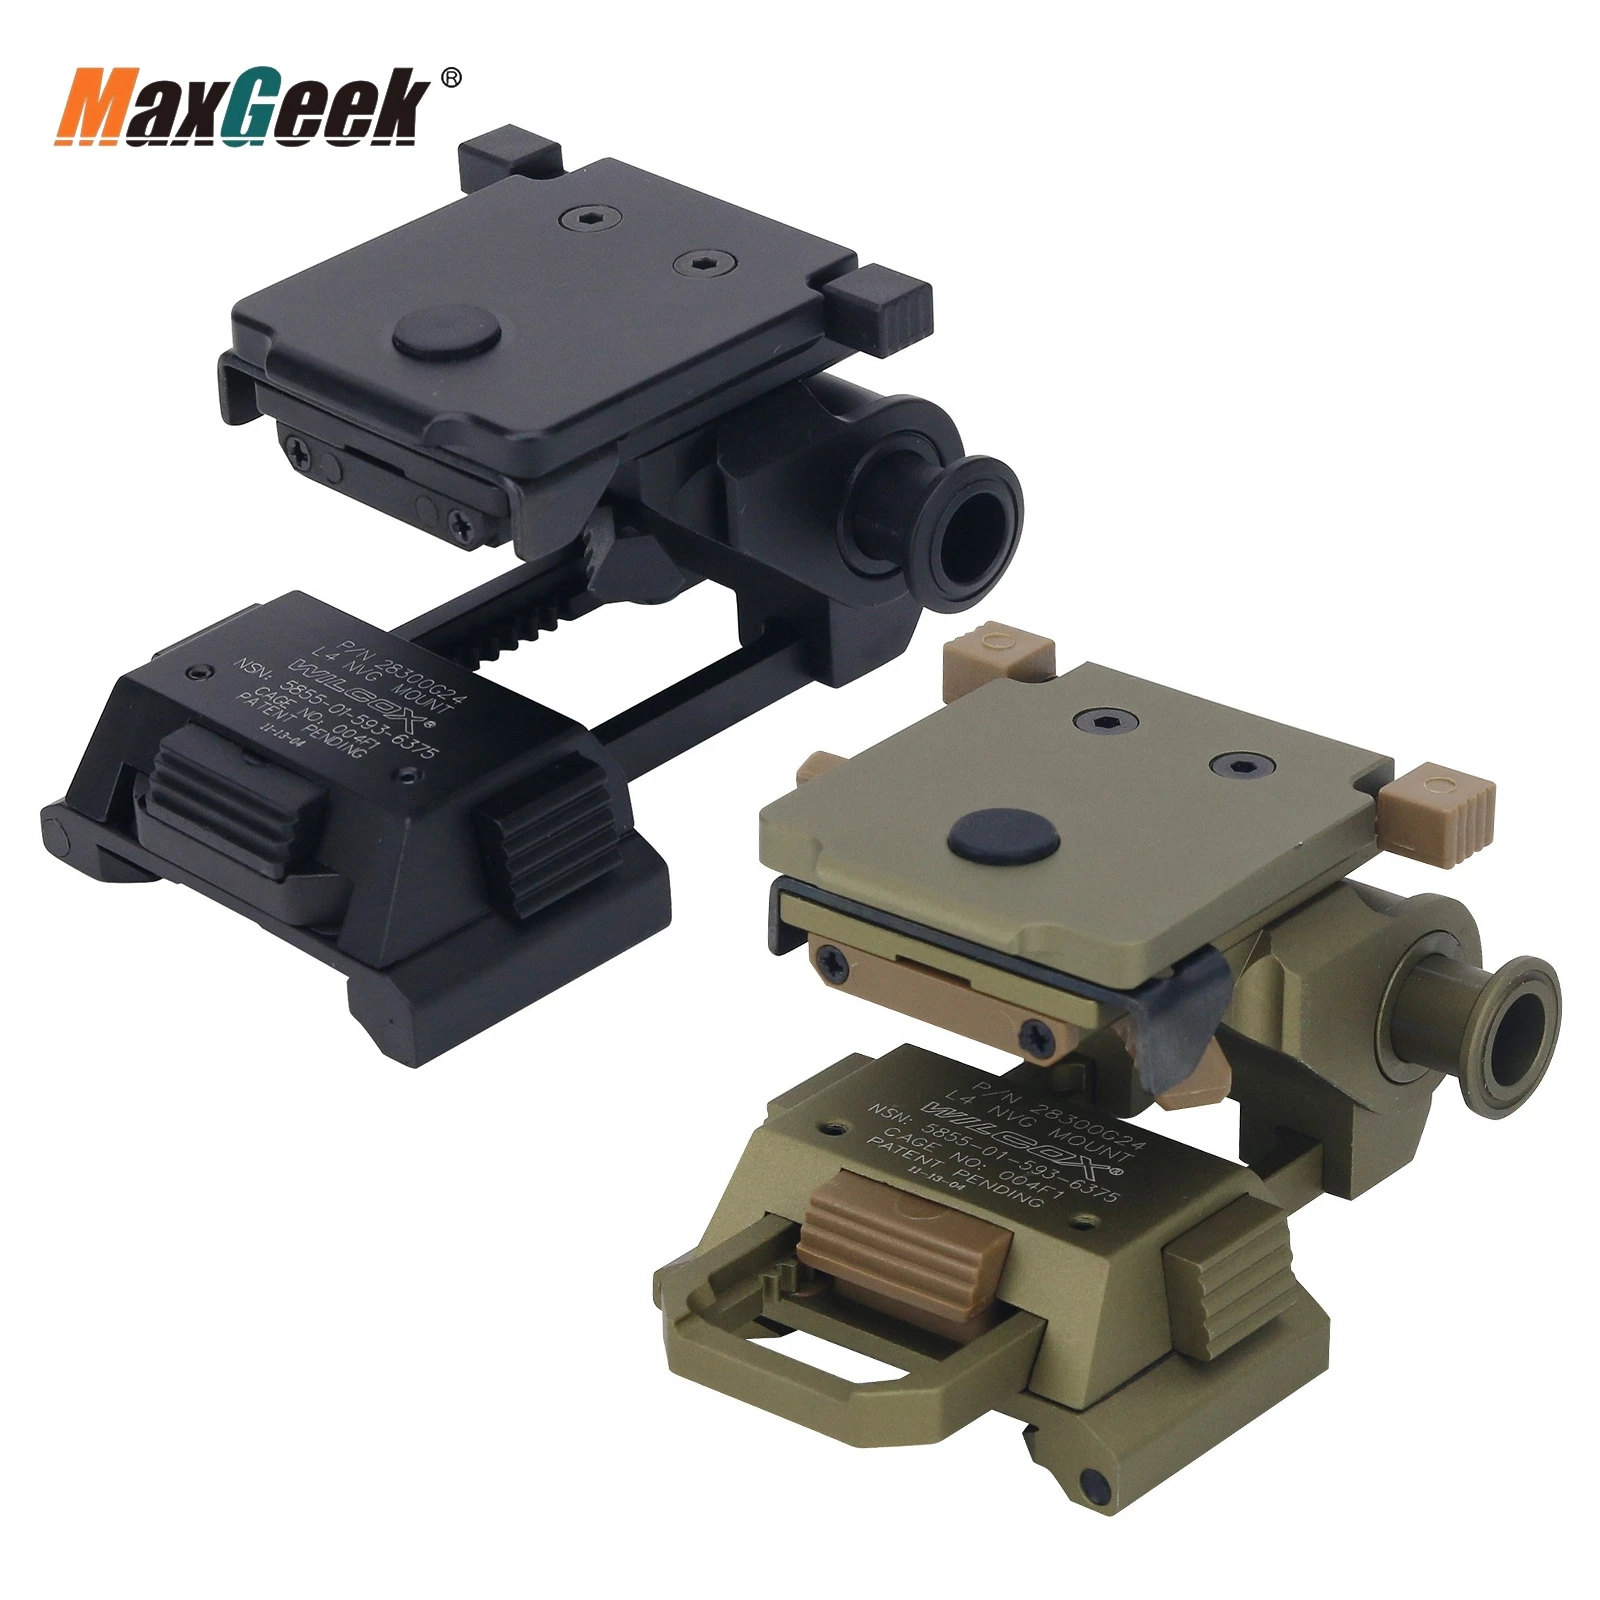 maxgeek-support-cnc-de-montage-de-casque-l4g24-nvg-pvs15-pvs18-siege-telescopique-a-vision-nocturne-accessoires-a-demontage-rapide